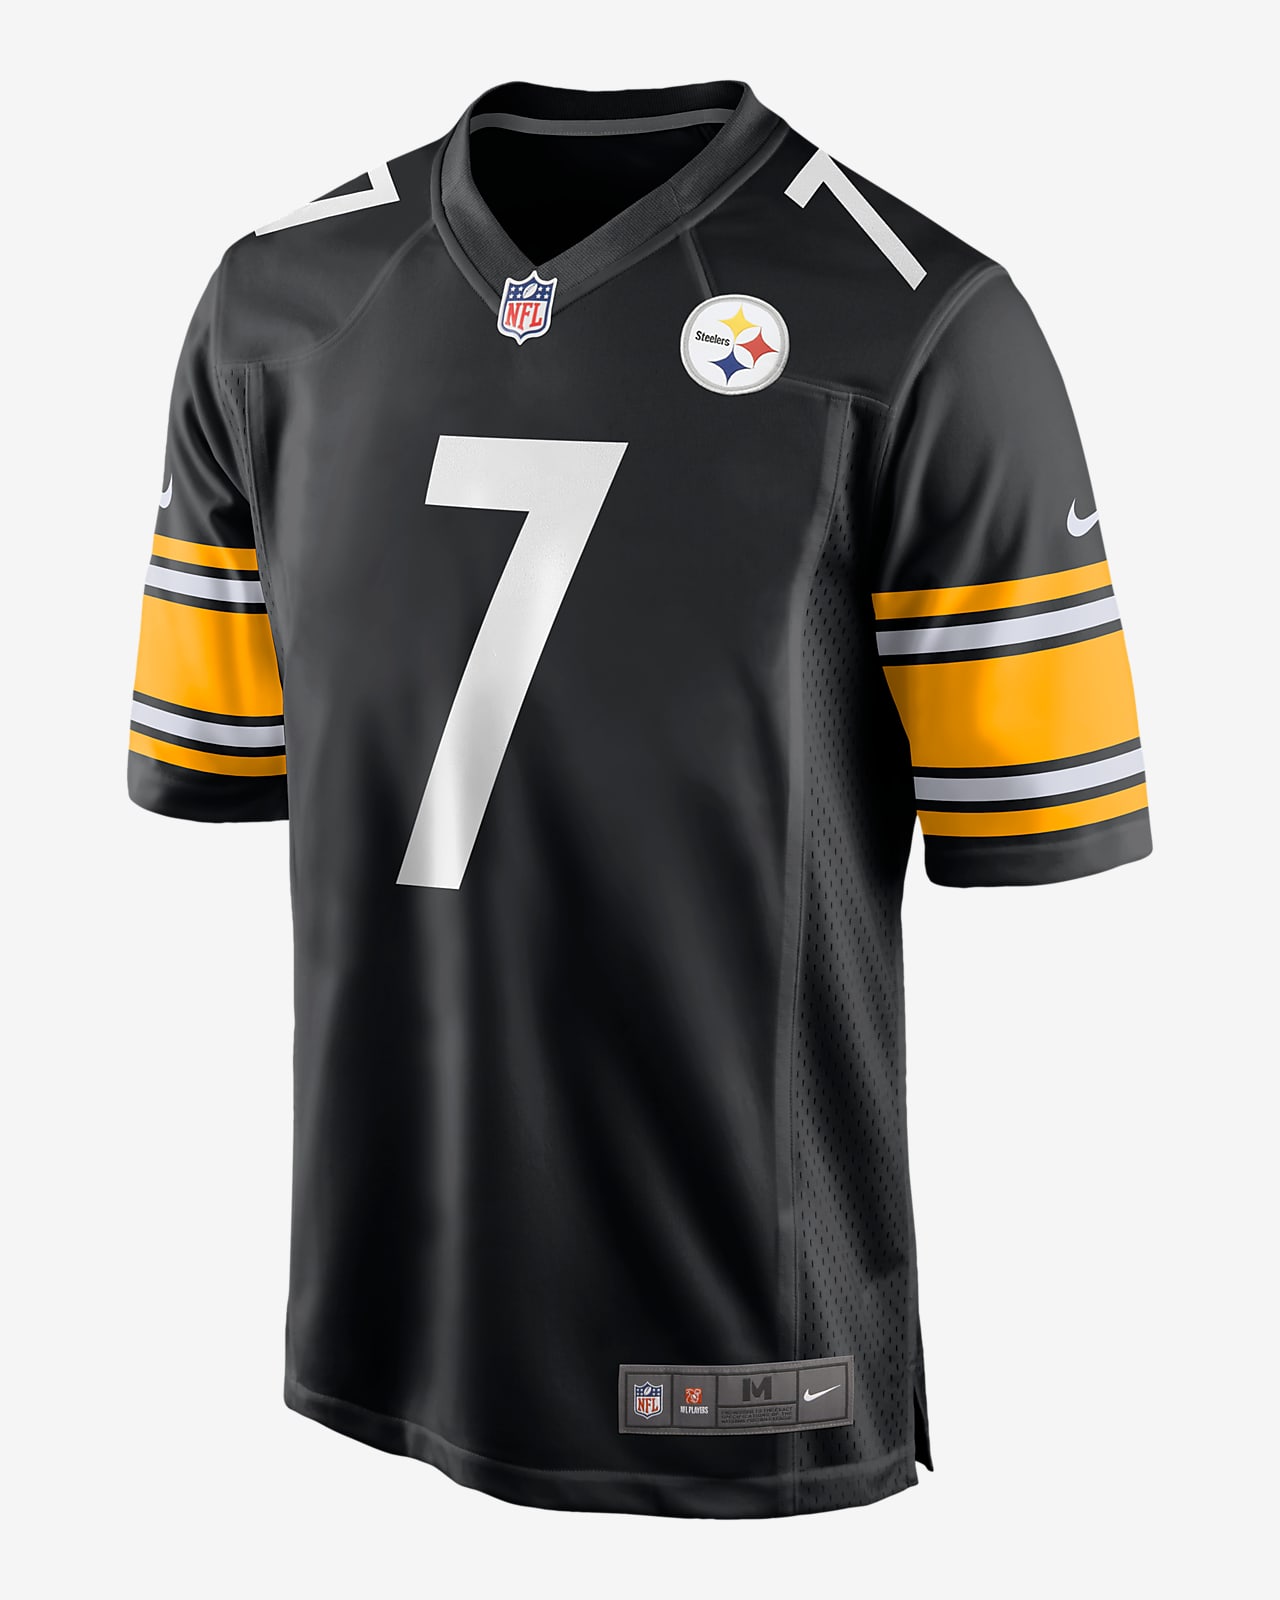 NFL Pittsburgh Steelers (Ben Roethlisberger) American-football-wedstrijdjersey voor heren